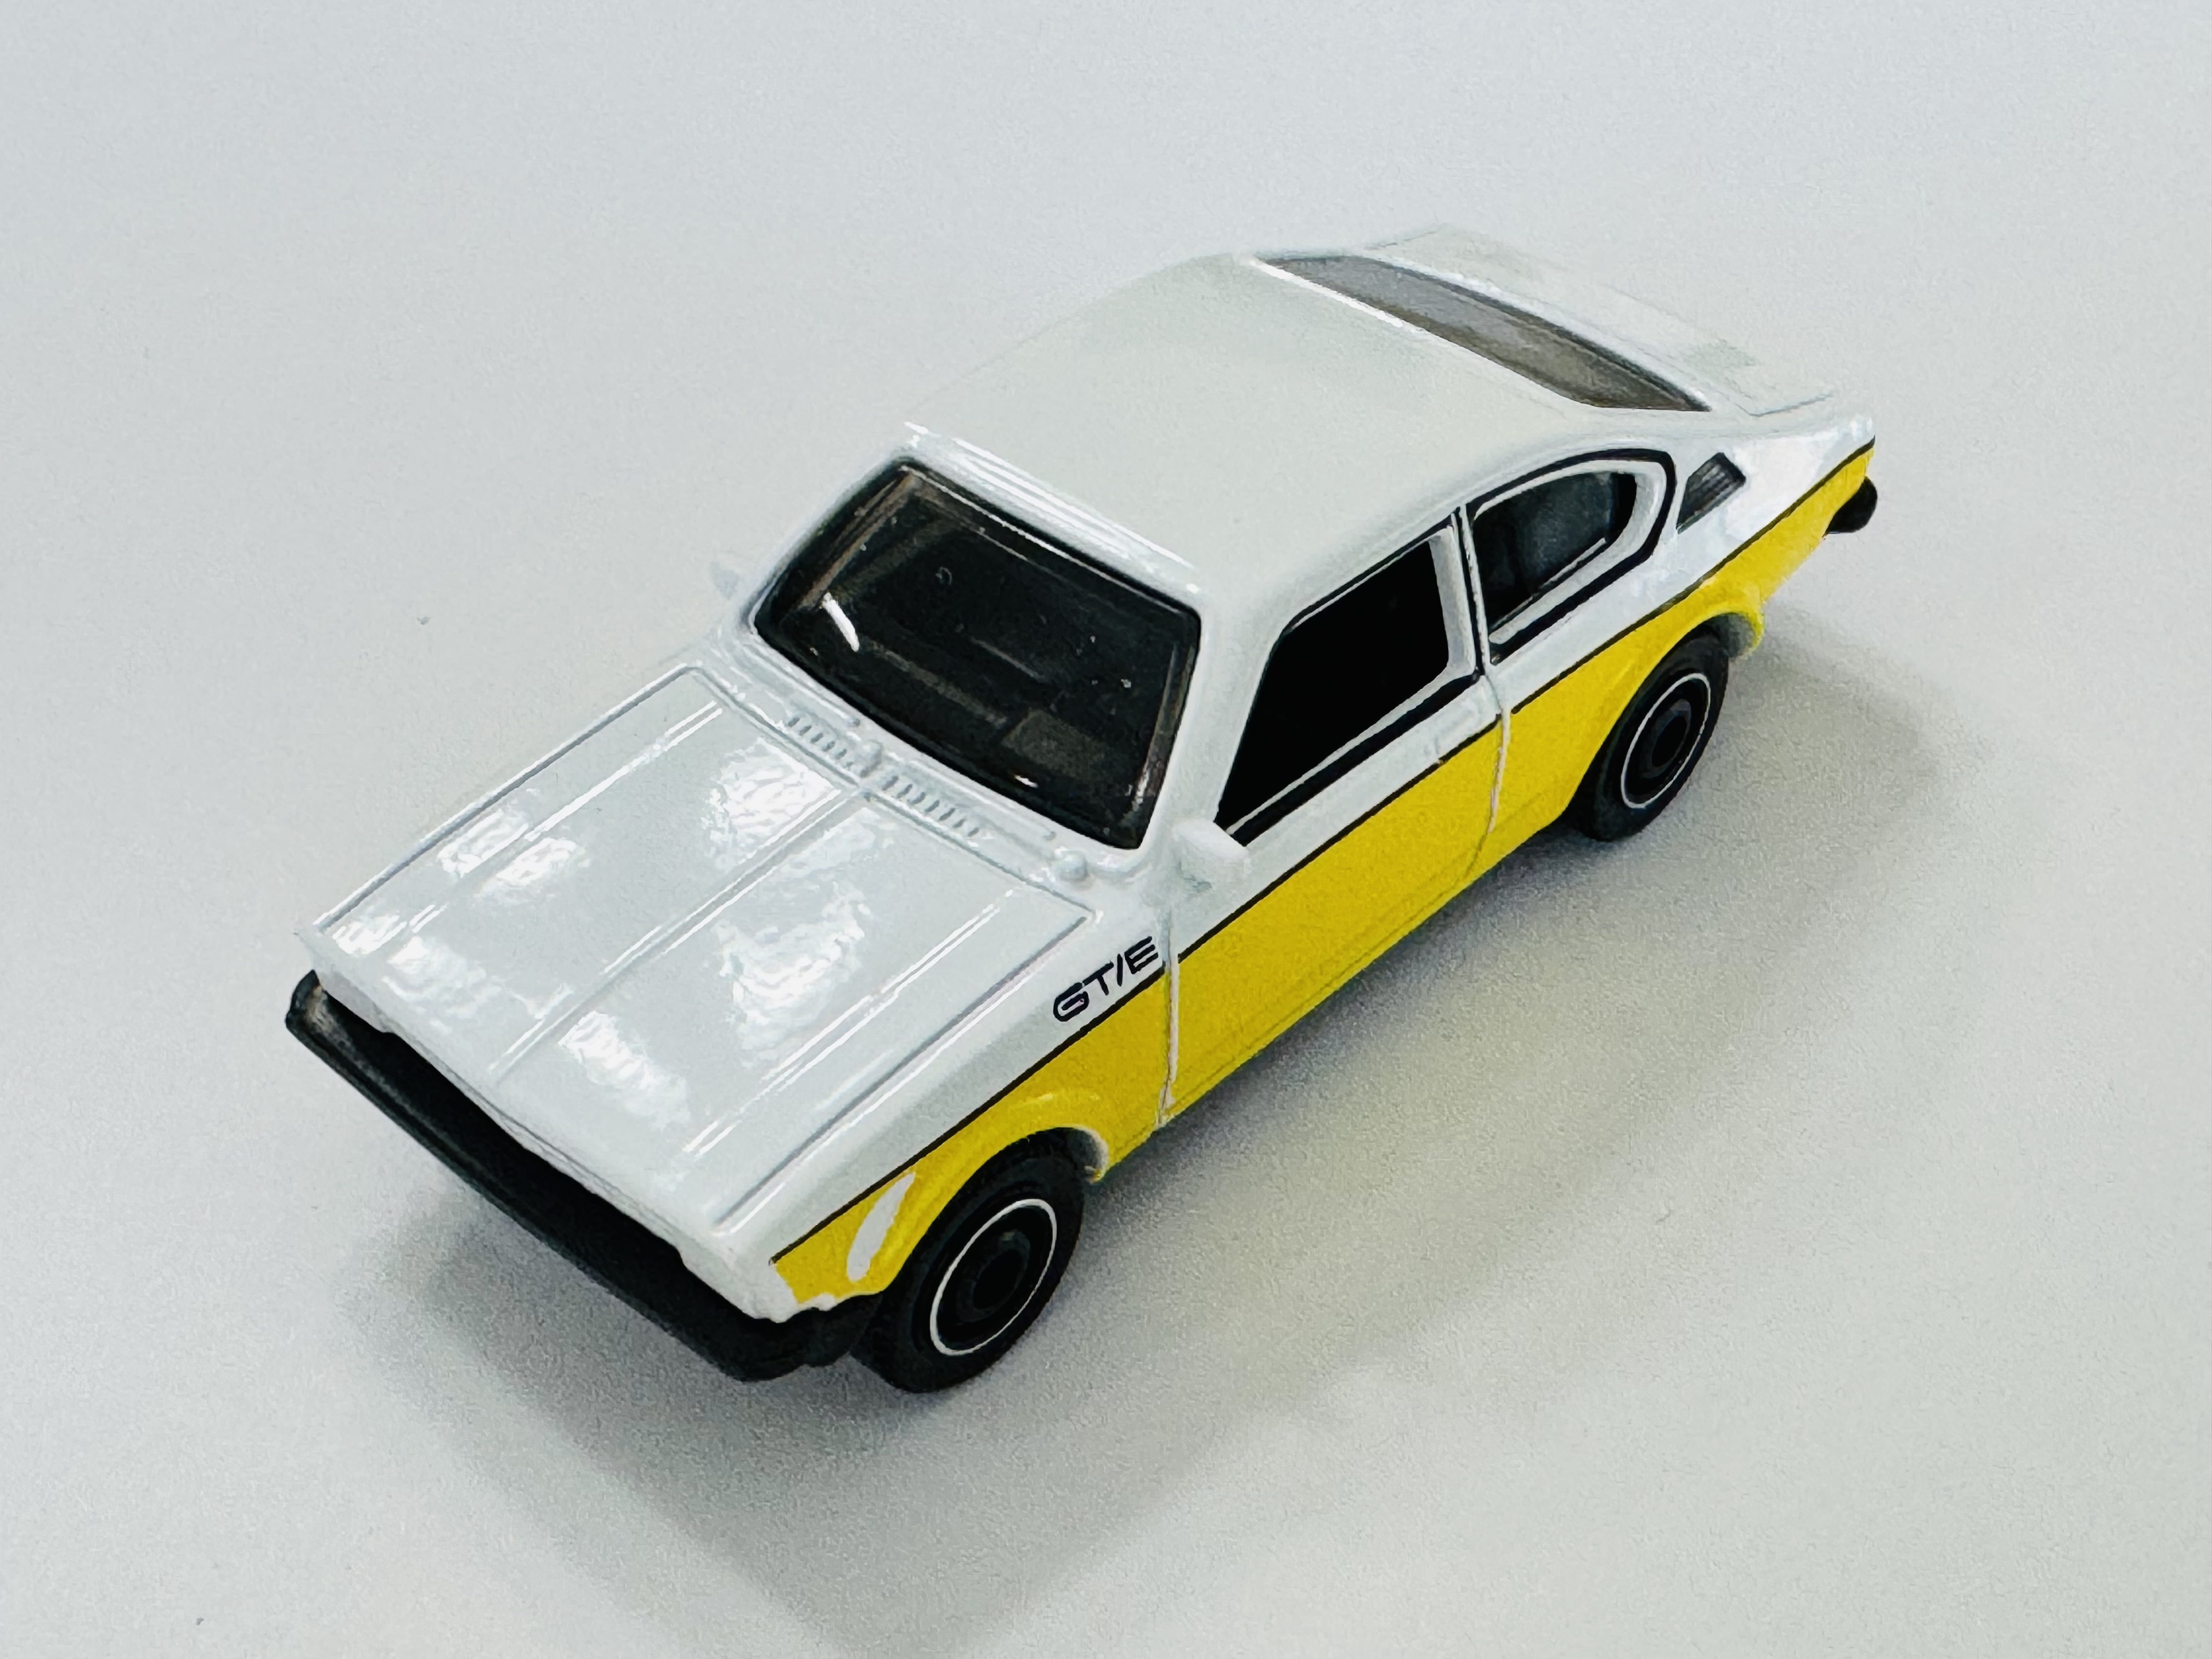 Matchbox Opel Kadett Coupe